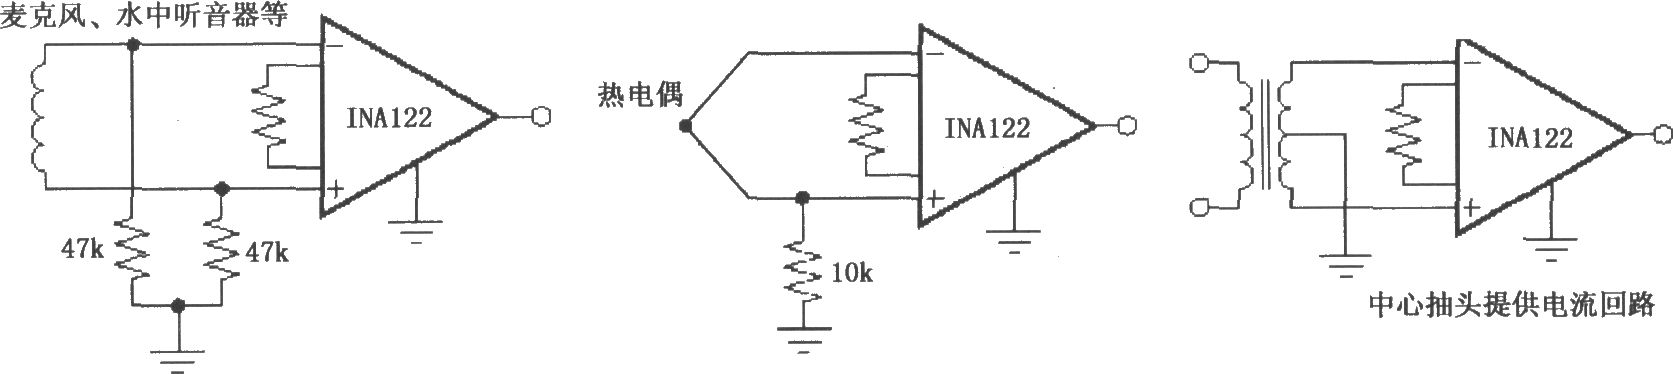 3个典型的INA122提供输入偏流通路的电路